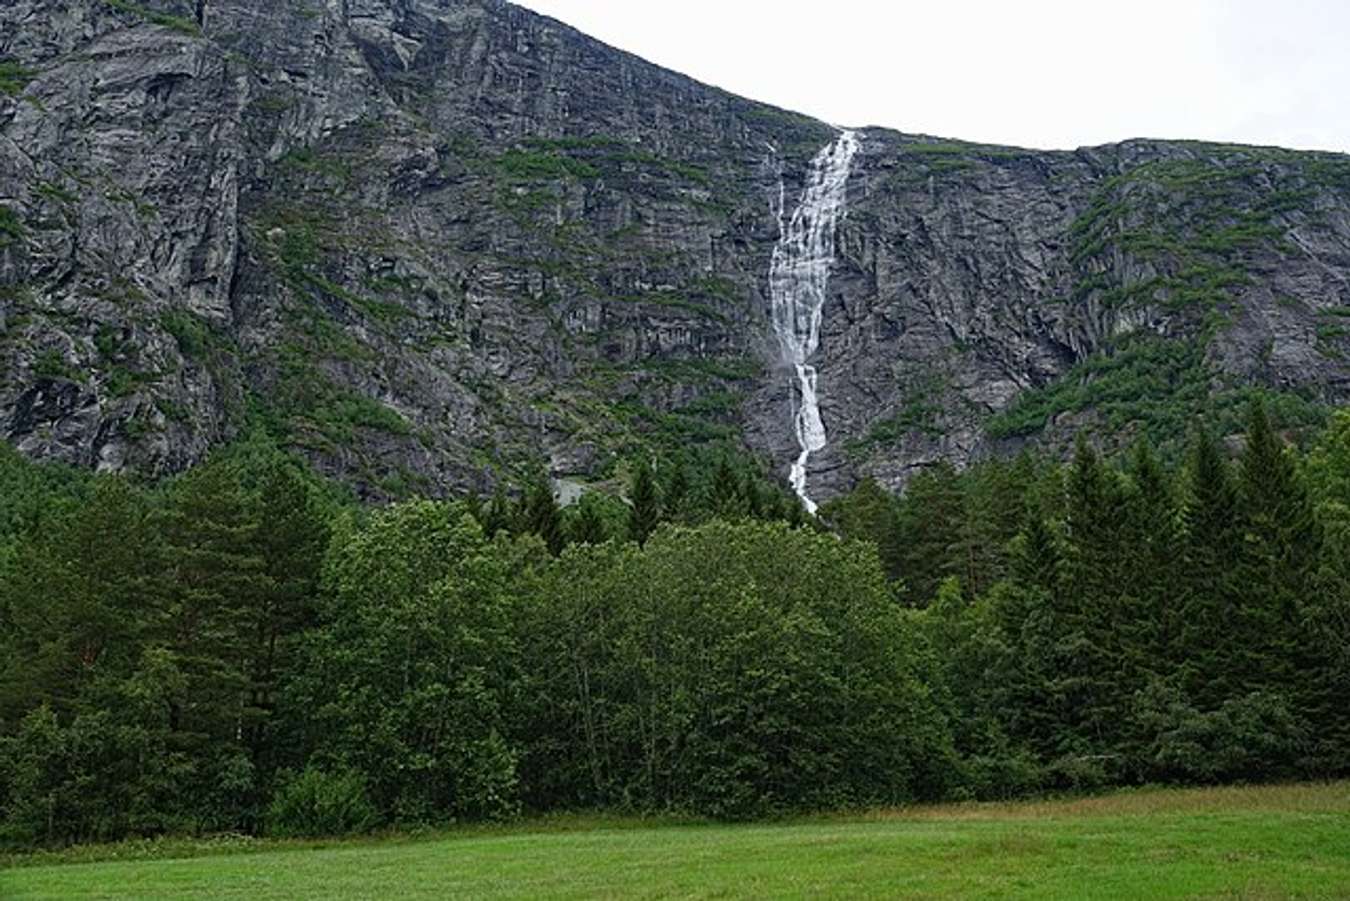 monge falls, norwegia - air terjun tertinggi di dunia - wikipedia